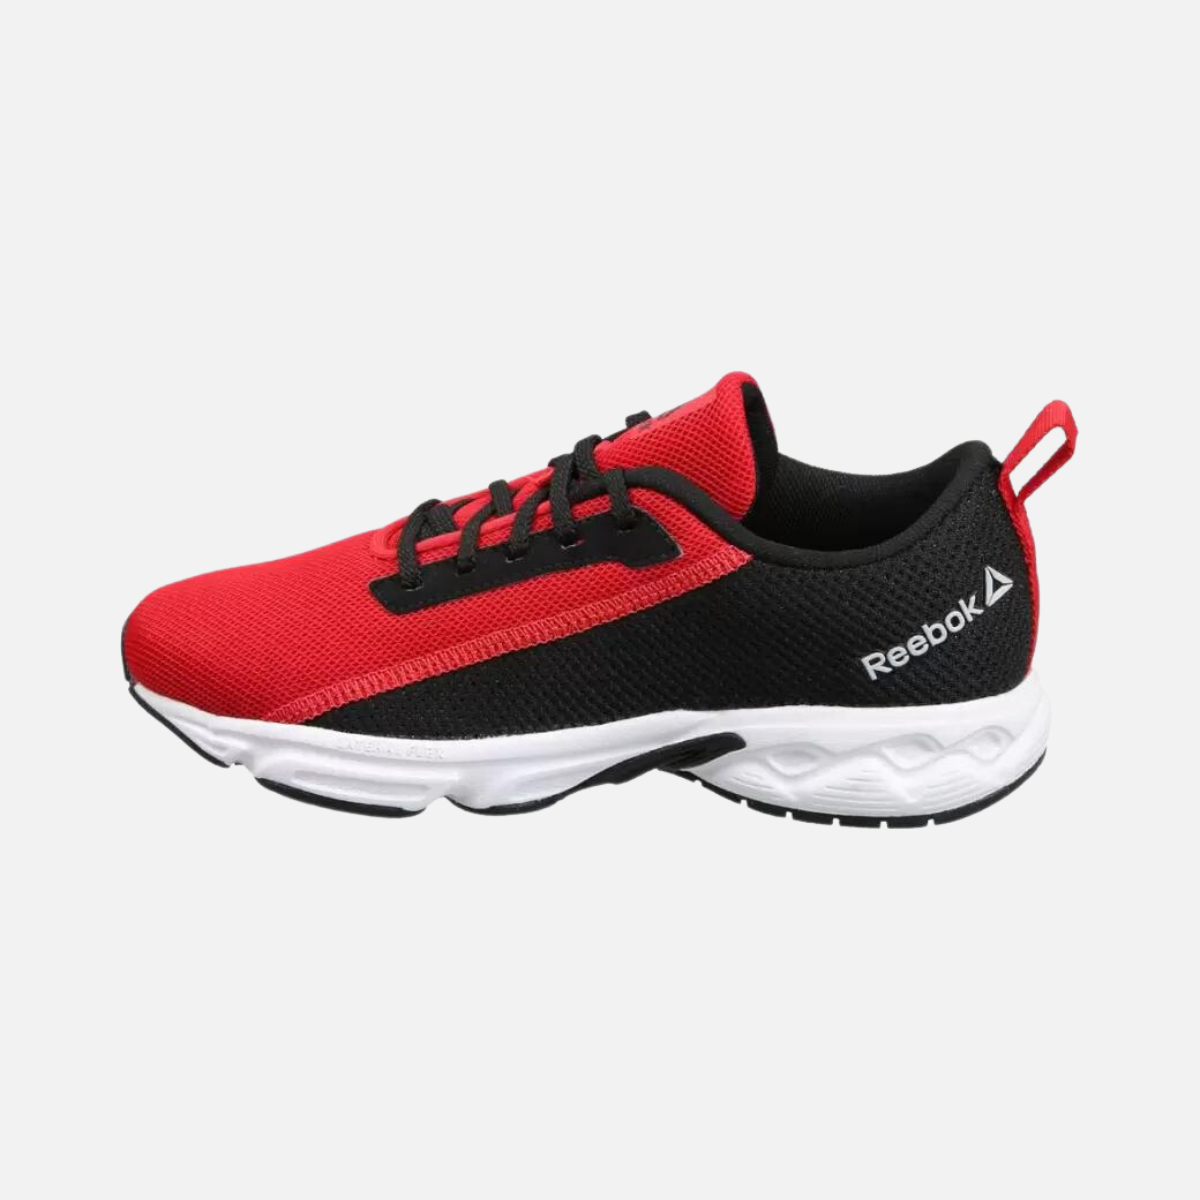 Reebok Bronn Runner Kids Boys Running Shoes -Red/Black